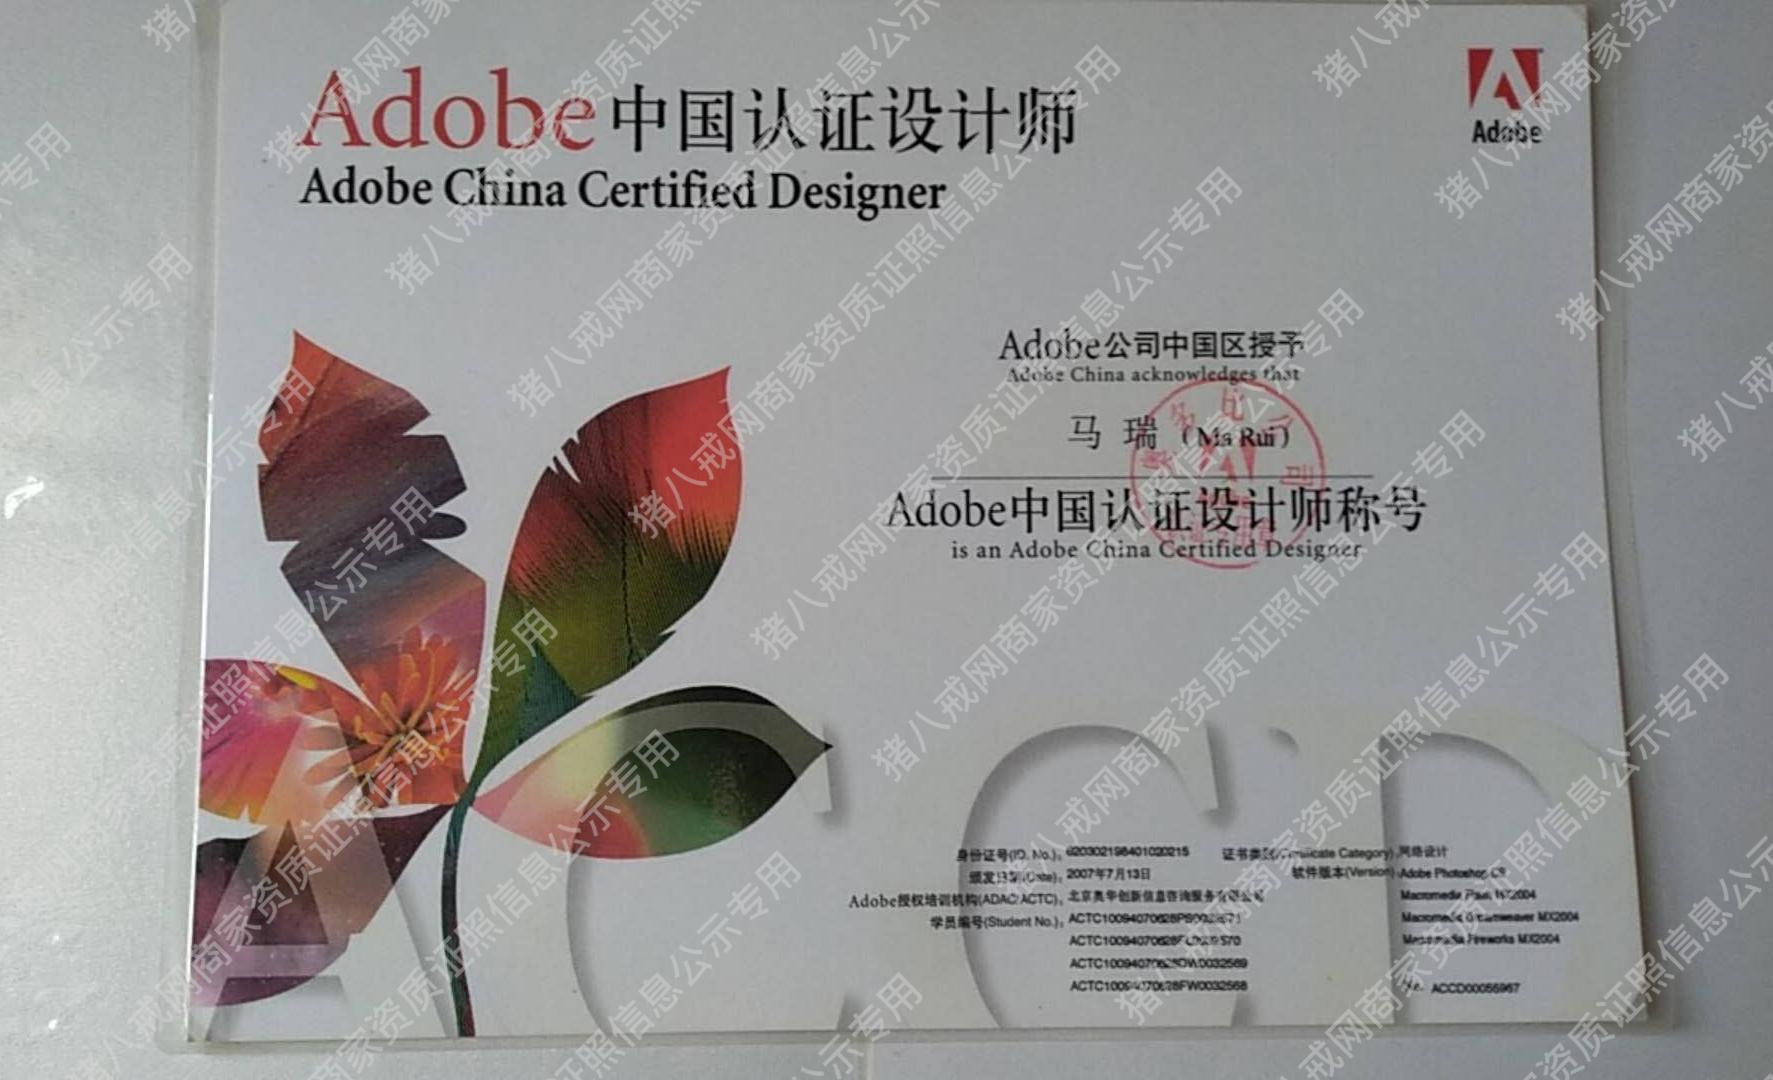 Adobe中国认证设计师